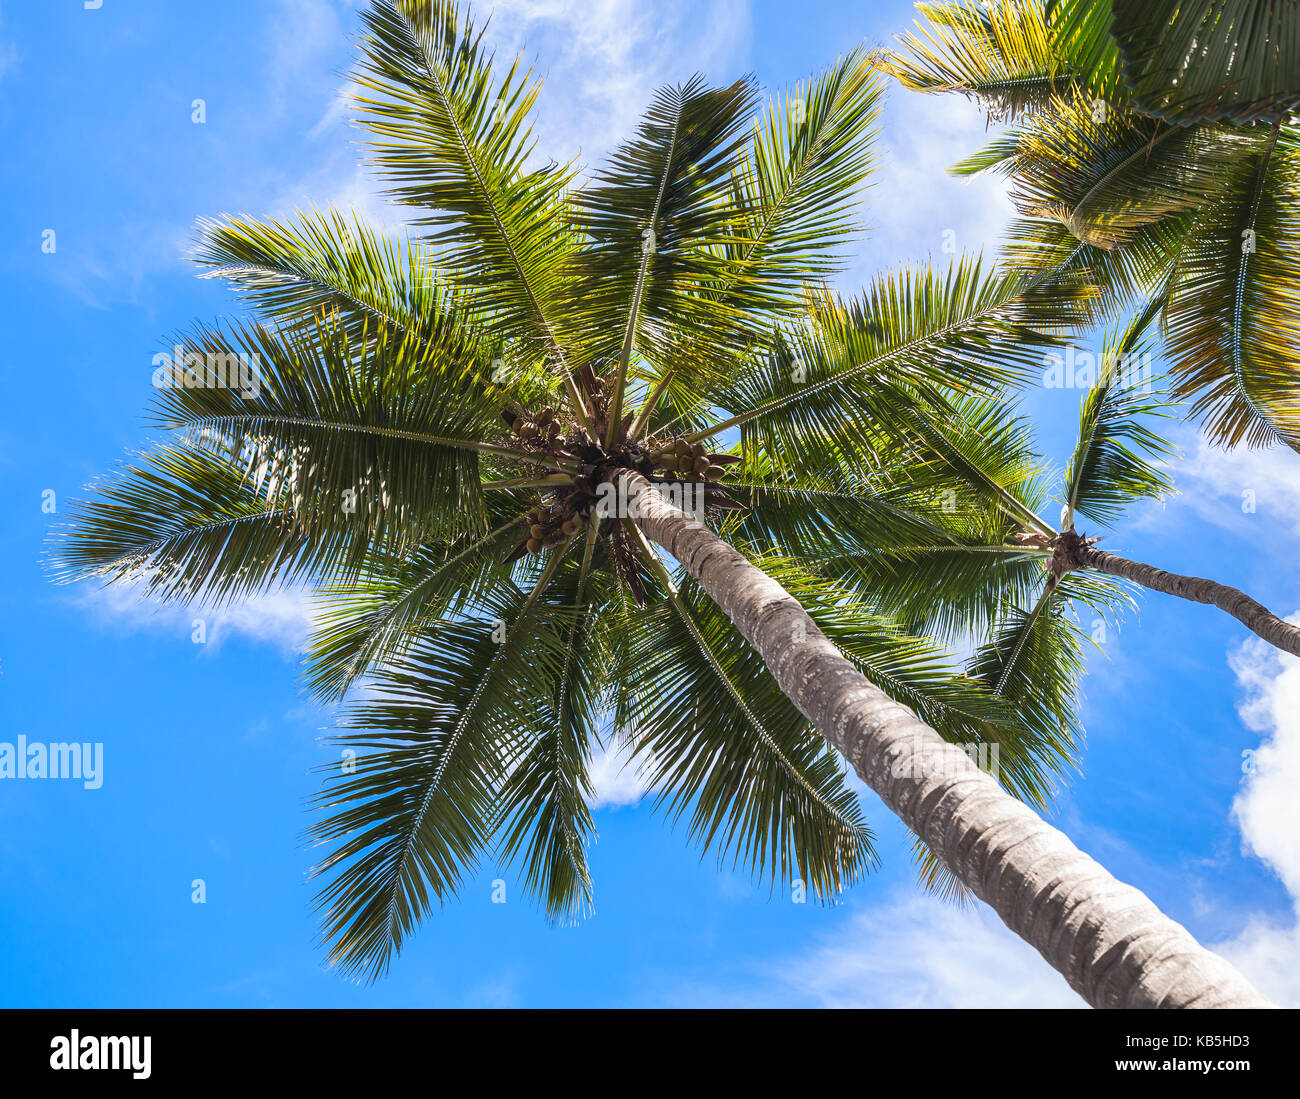 Kokospalmen unter blauen bewölkten Himmel, tropische Natur Hintergrund, Dominikanische Republik Stockfoto